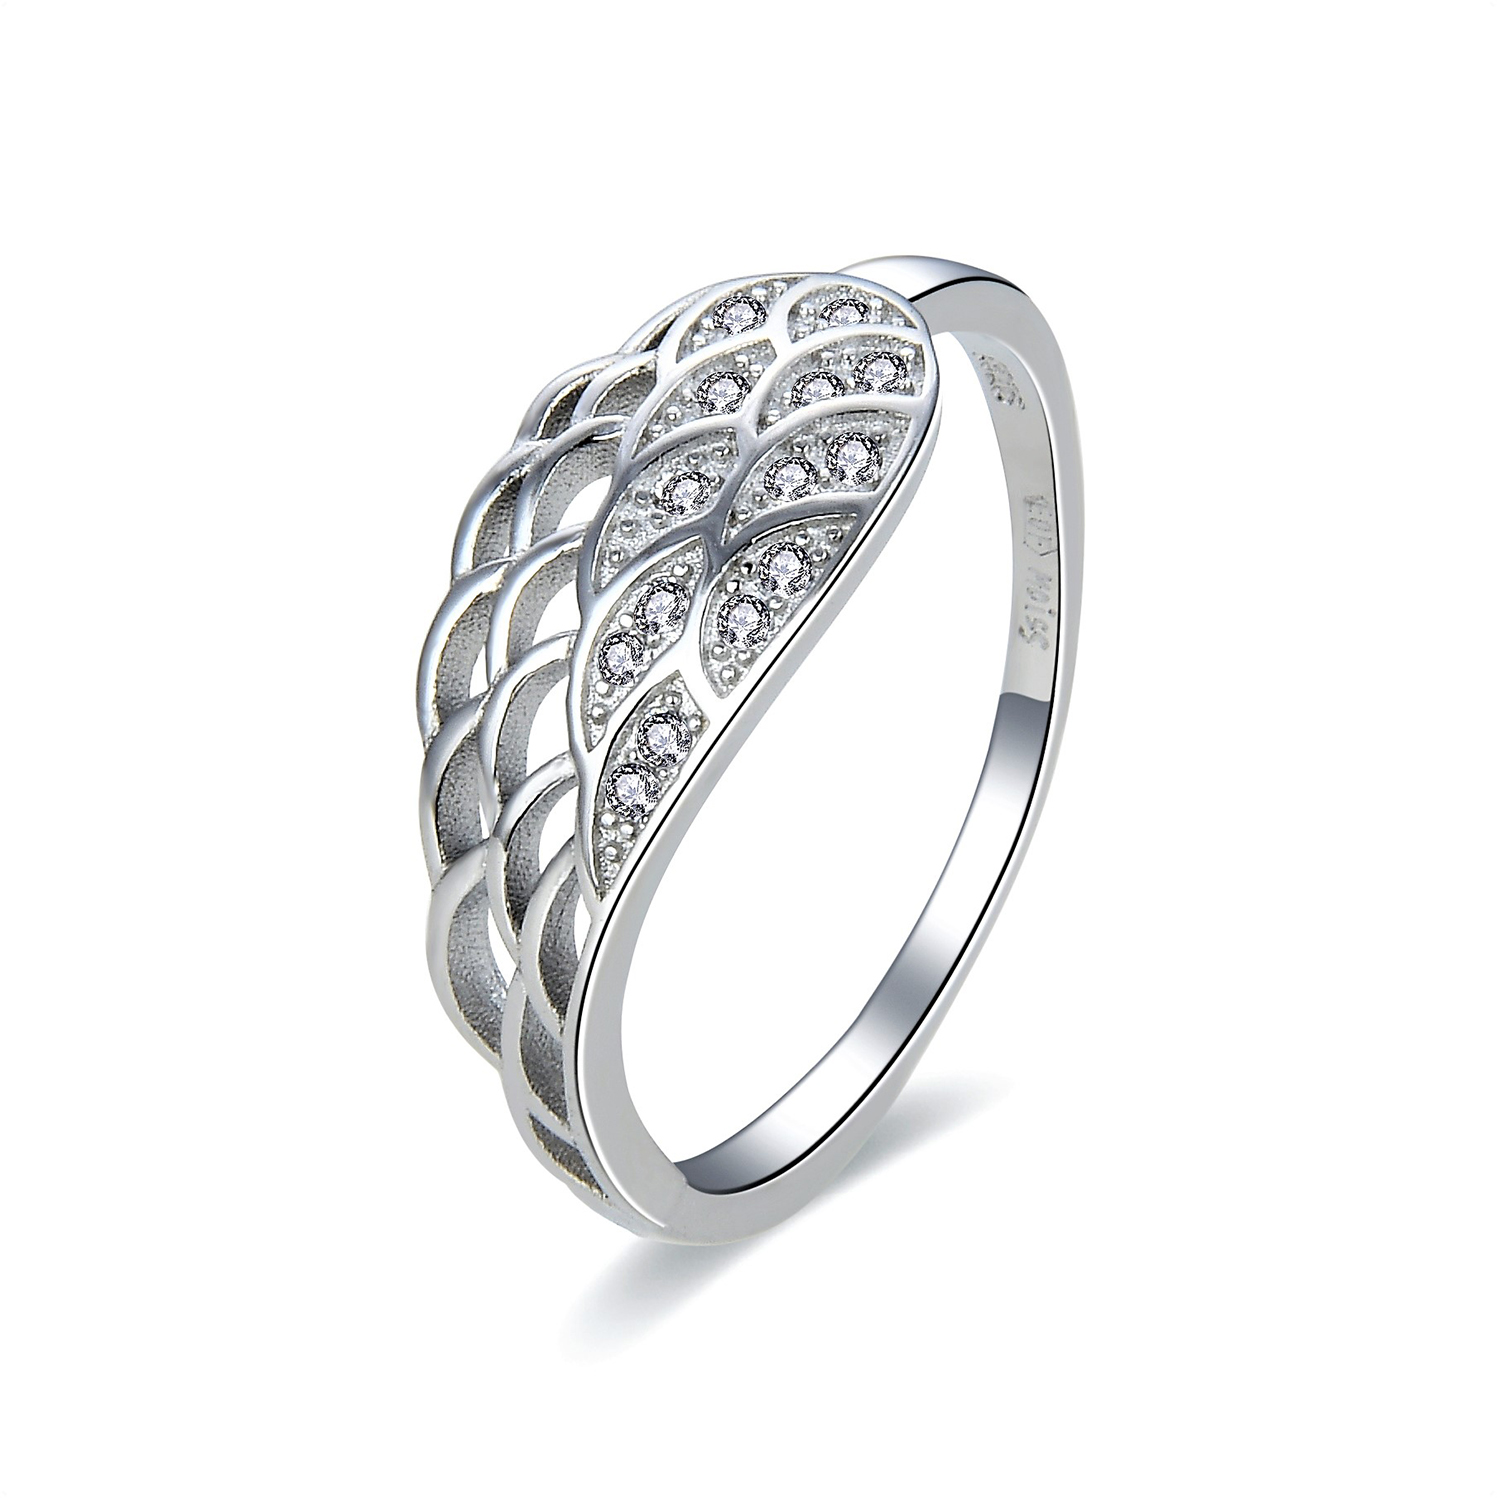 MOISS Moiss stříbrný prsten ANDĚLSKÉ KŘÍDLO R0002757 Velikost 54 mm R0002758